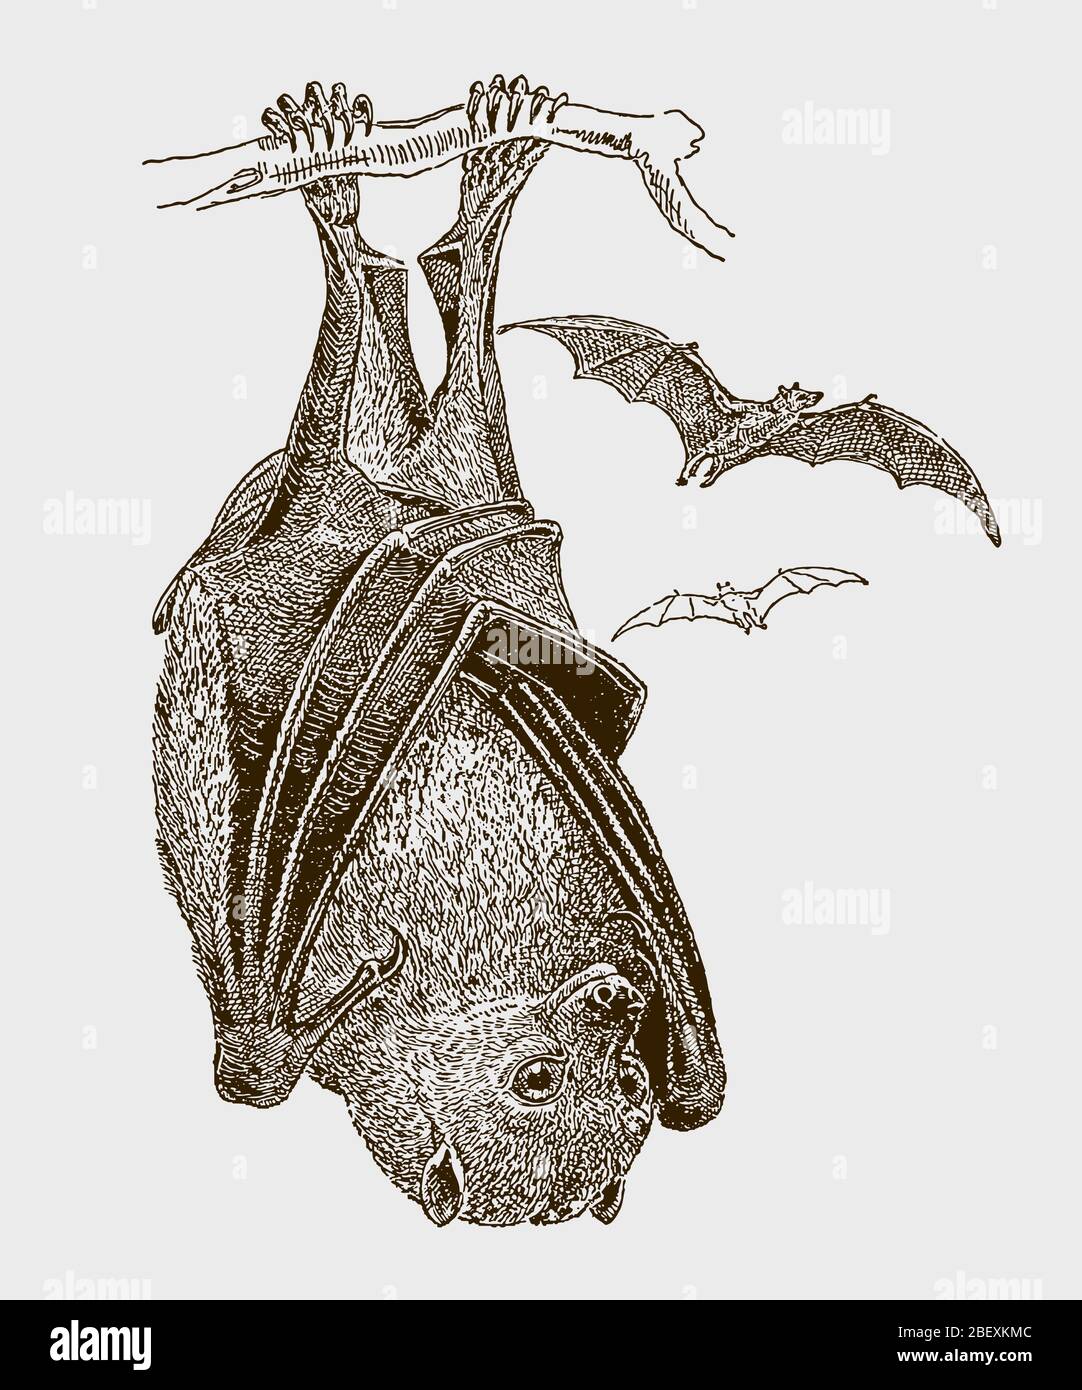 Großer fliegender Fuchs oder kalong, pteropus vampyrus, der kopfüber an einem Ast hängt, in der Vorderansicht. Illustration nach einem Stich aus dem 19. Jahrhundert Stock Vektor